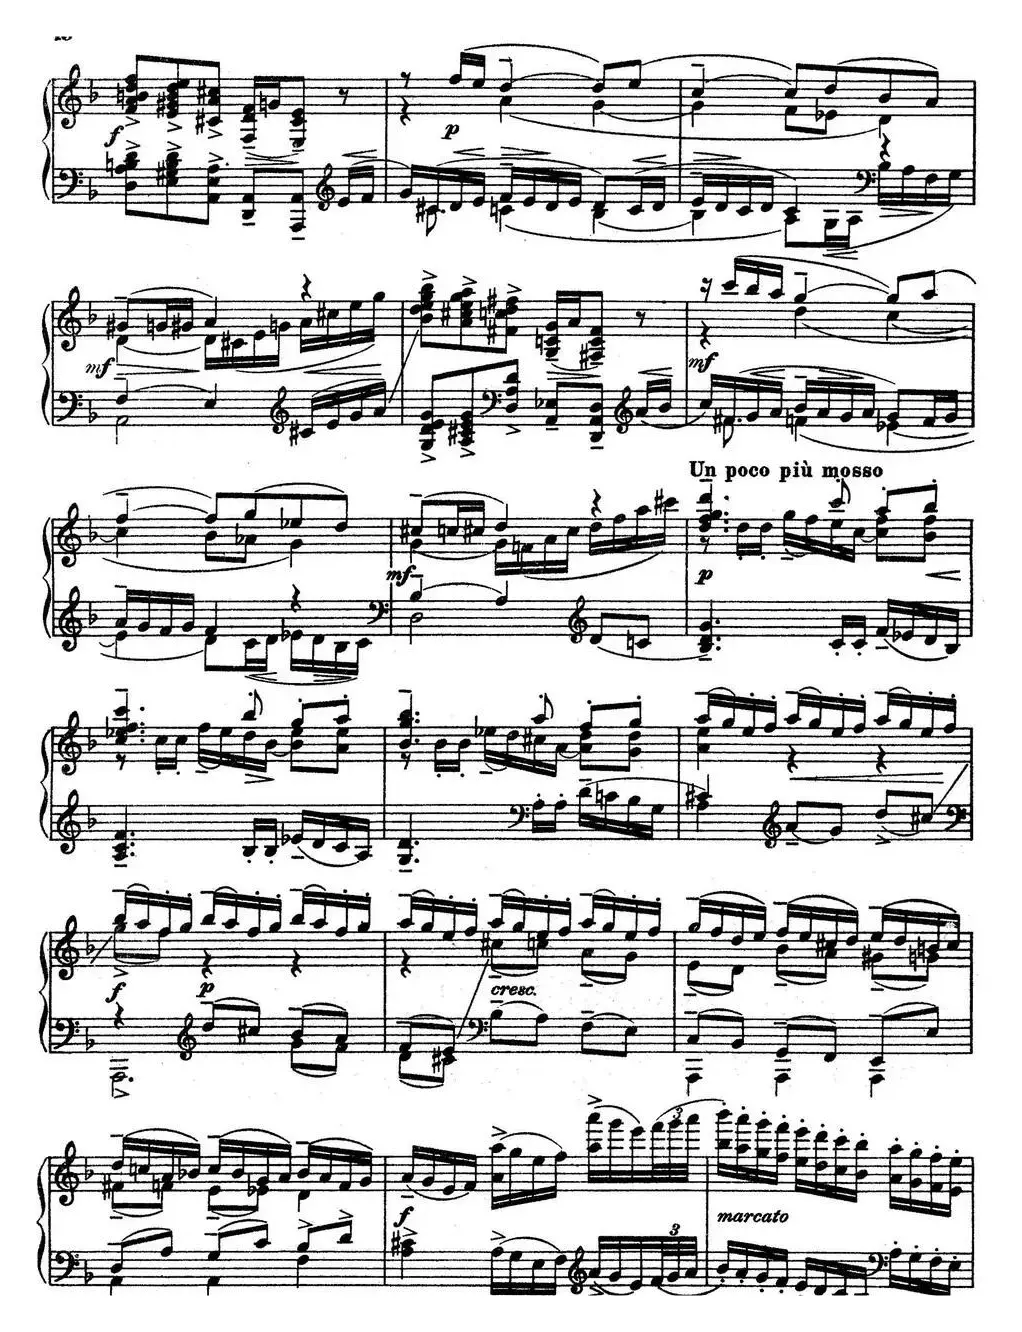 10 Preludes Op.23（拉赫玛尼诺夫10首前奏曲·Ⅲ）